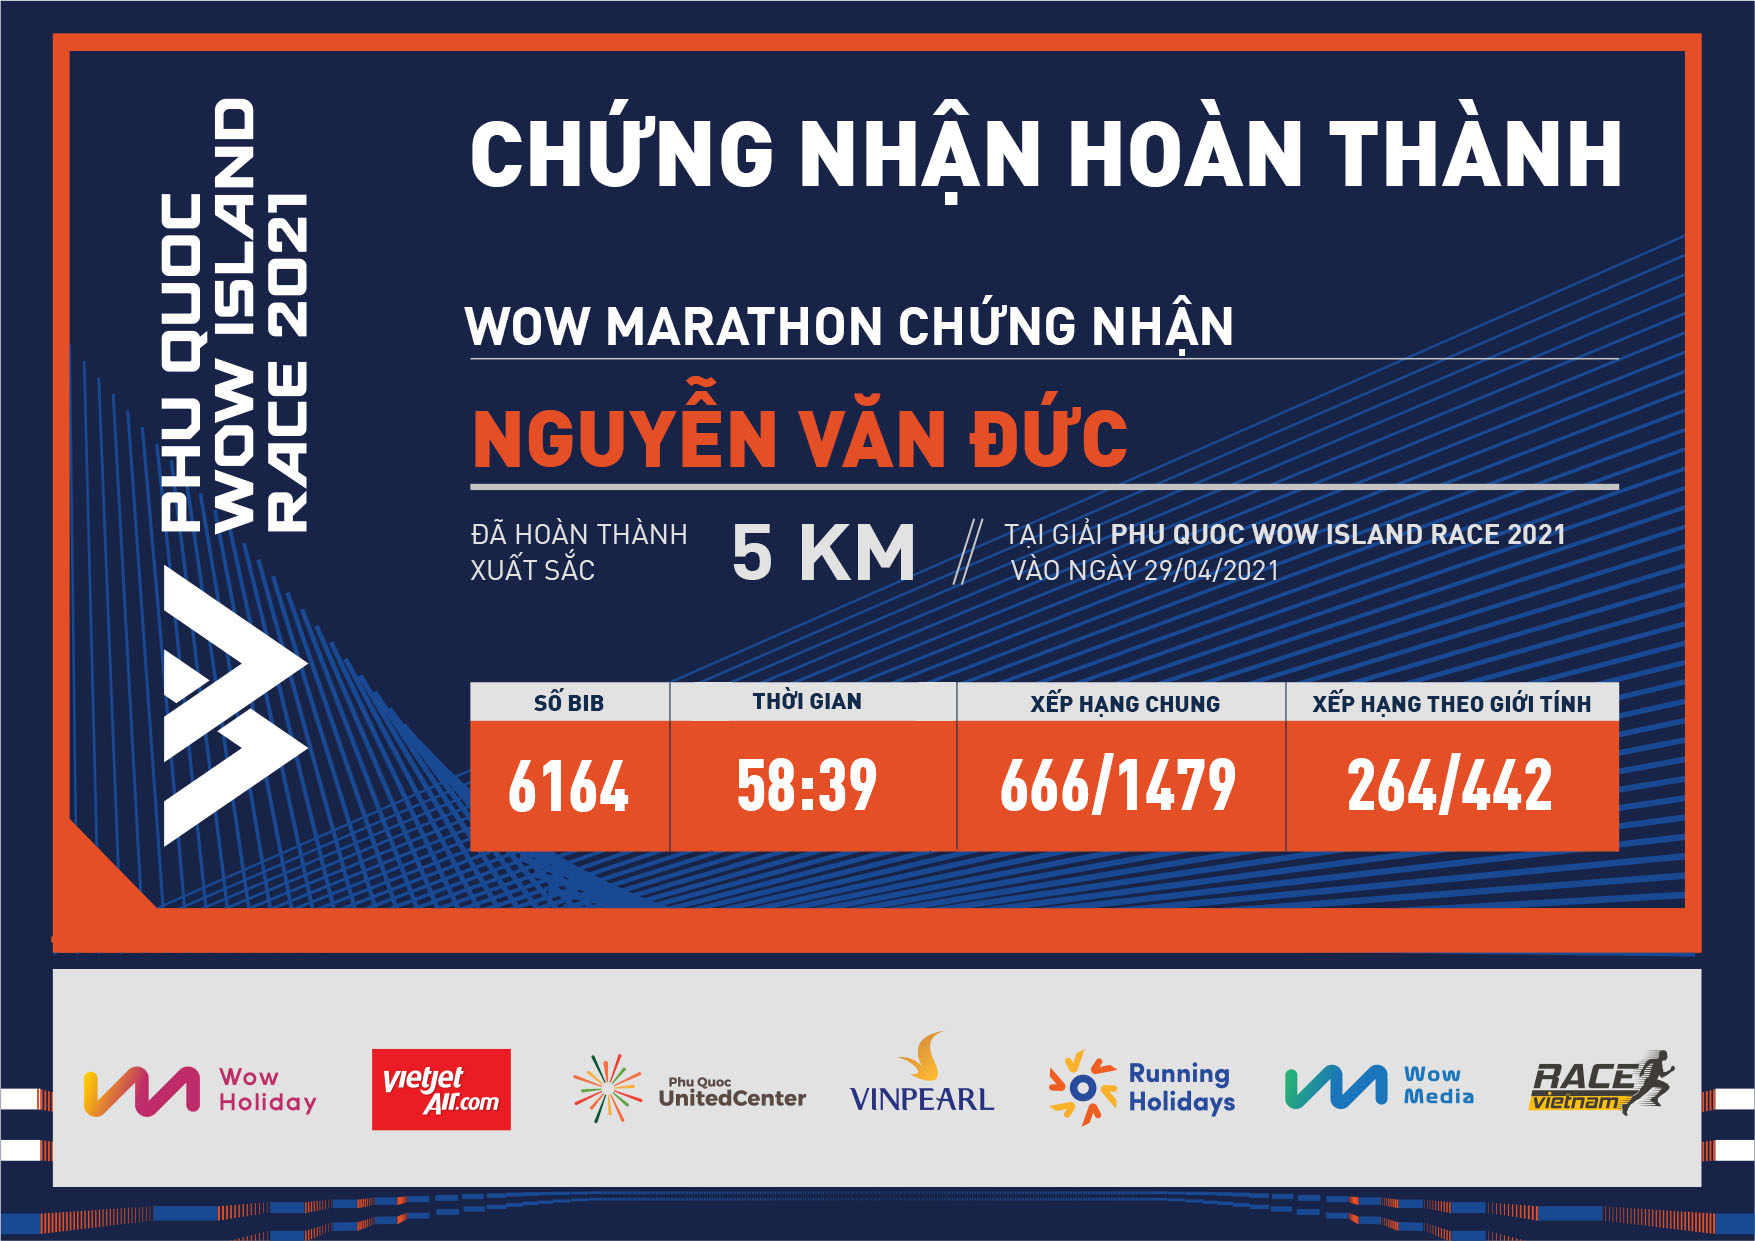 6164 - Nguyễn Văn Đức